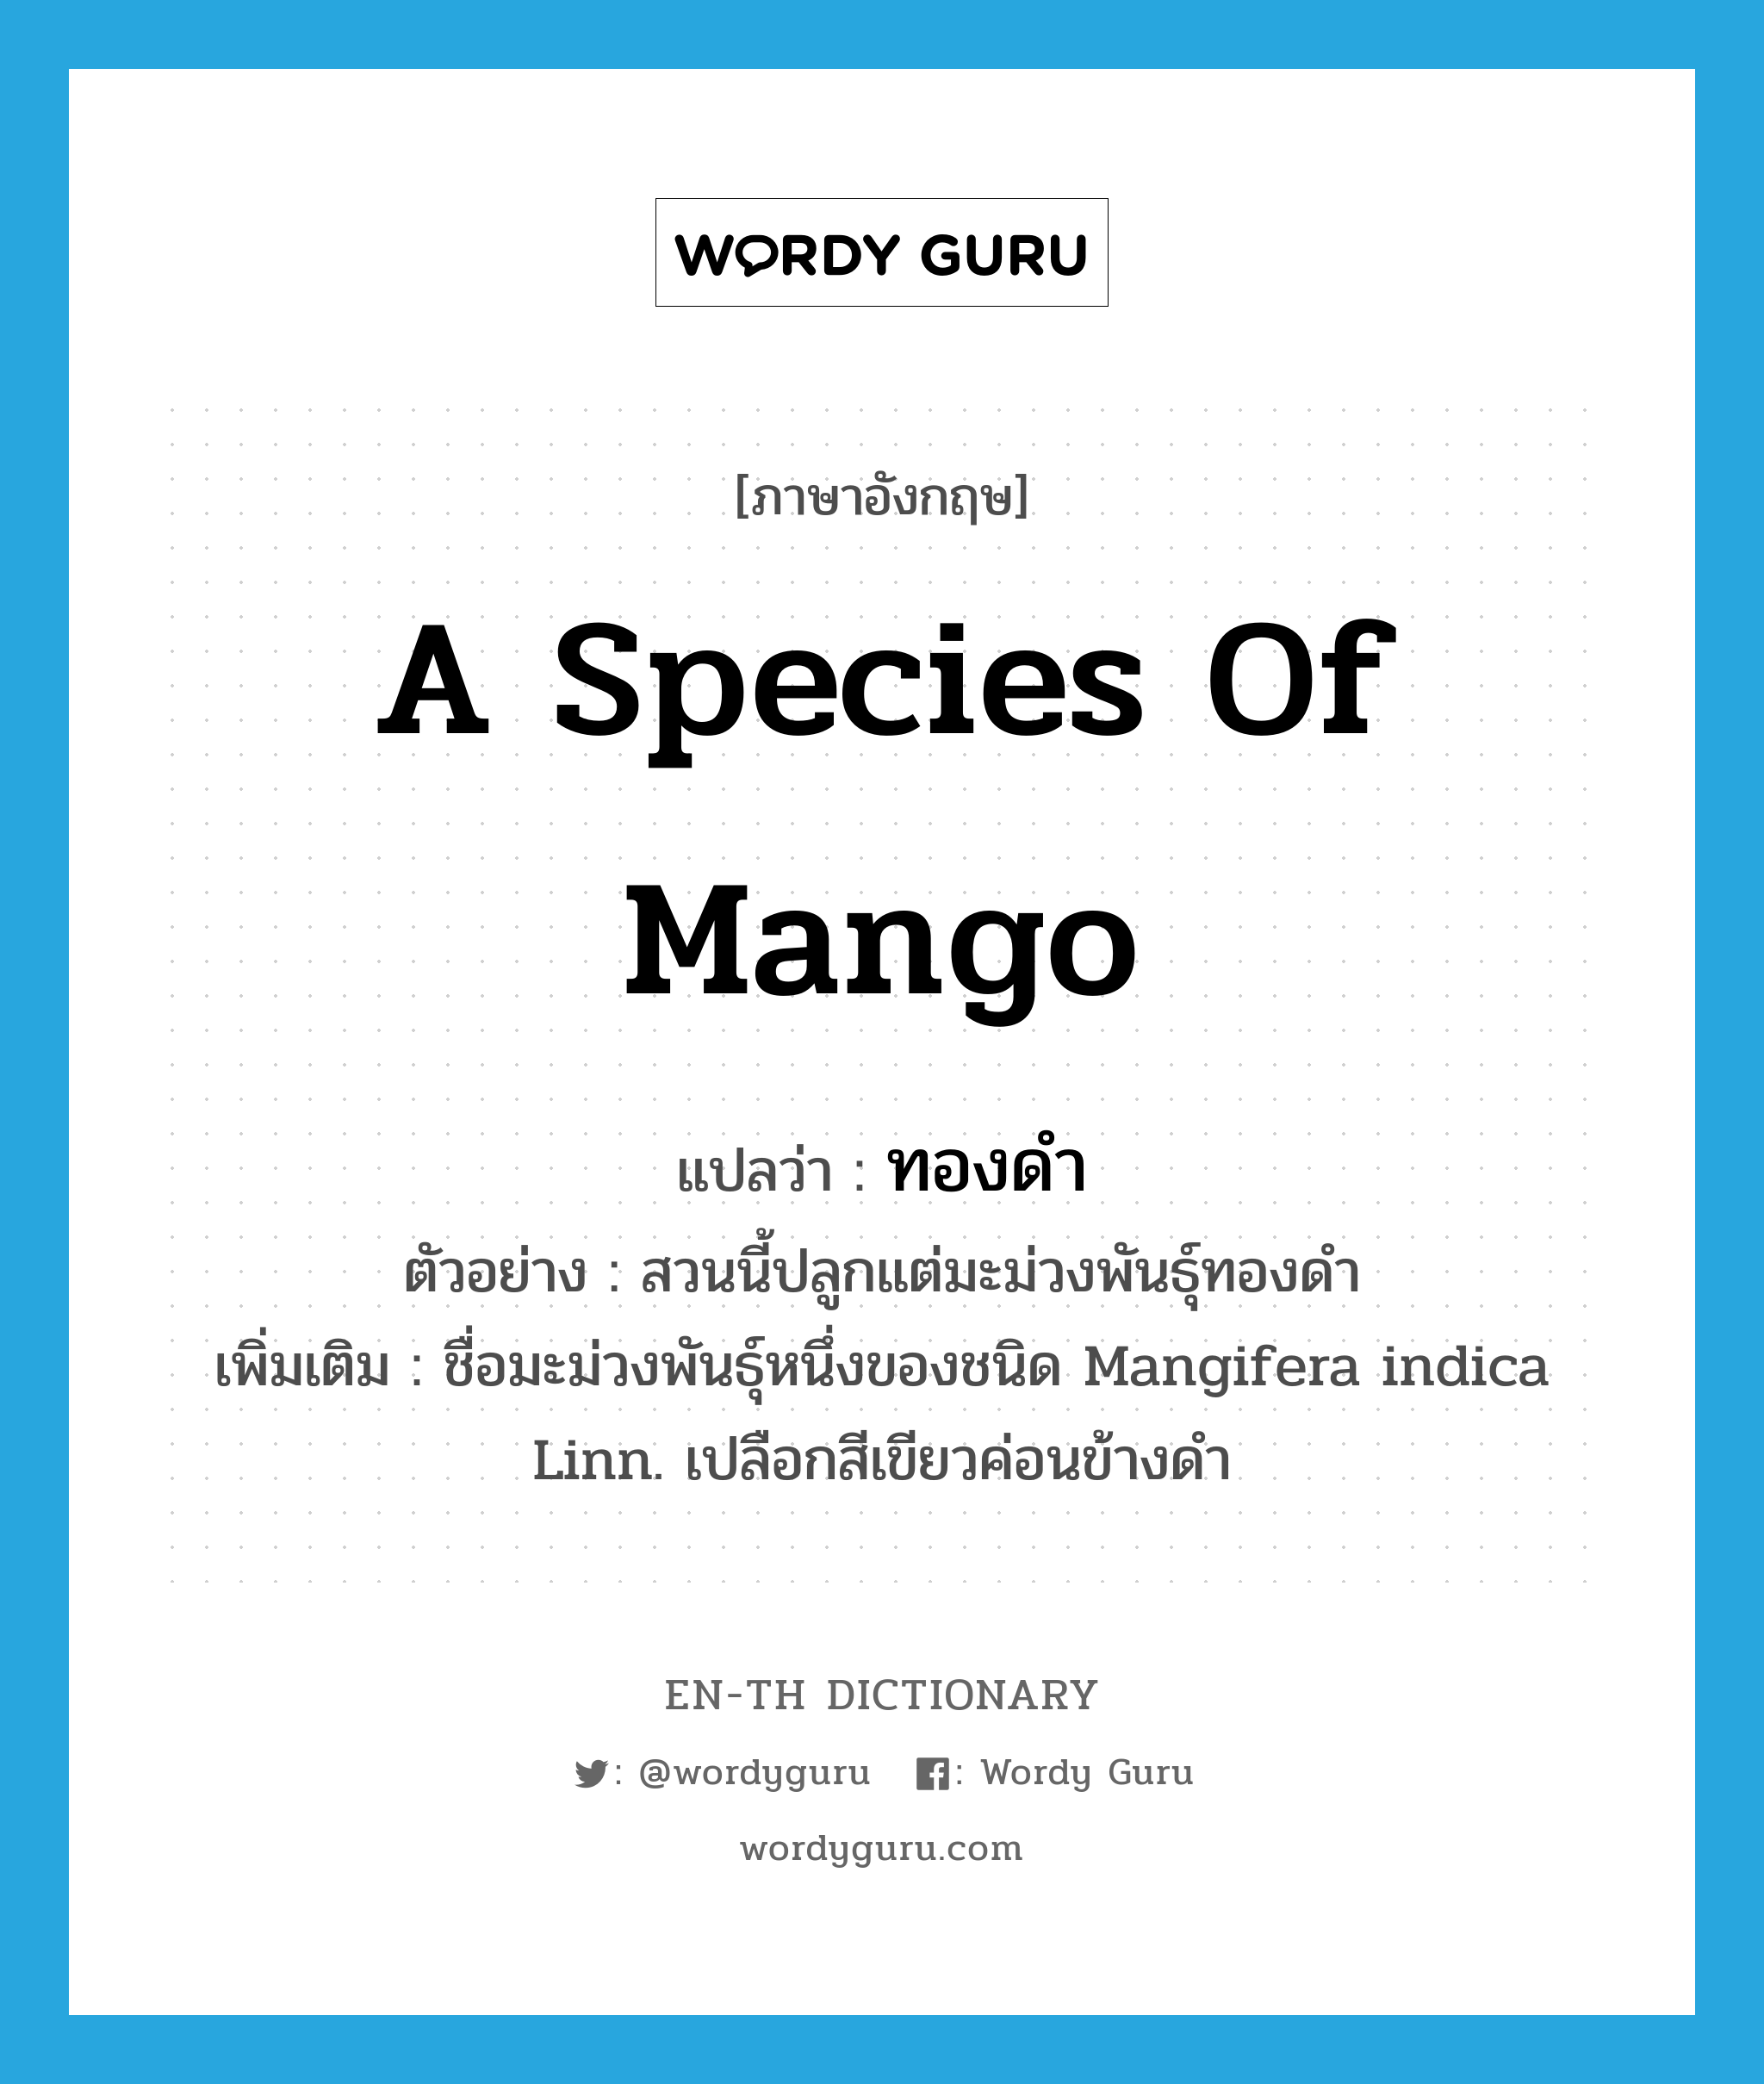 ทองดำ ภาษาอังกฤษ?, คำศัพท์ภาษาอังกฤษ ทองดำ แปลว่า a species of mango ประเภท N ตัวอย่าง สวนนี้ปลูกแต่มะม่วงพันธุ์ทองดำ เพิ่มเติม ชื่อมะม่วงพันธุ์หนึ่งของชนิด Mangifera indica Linn. เปลือกสีเขียวค่อนข้างดำ หมวด N